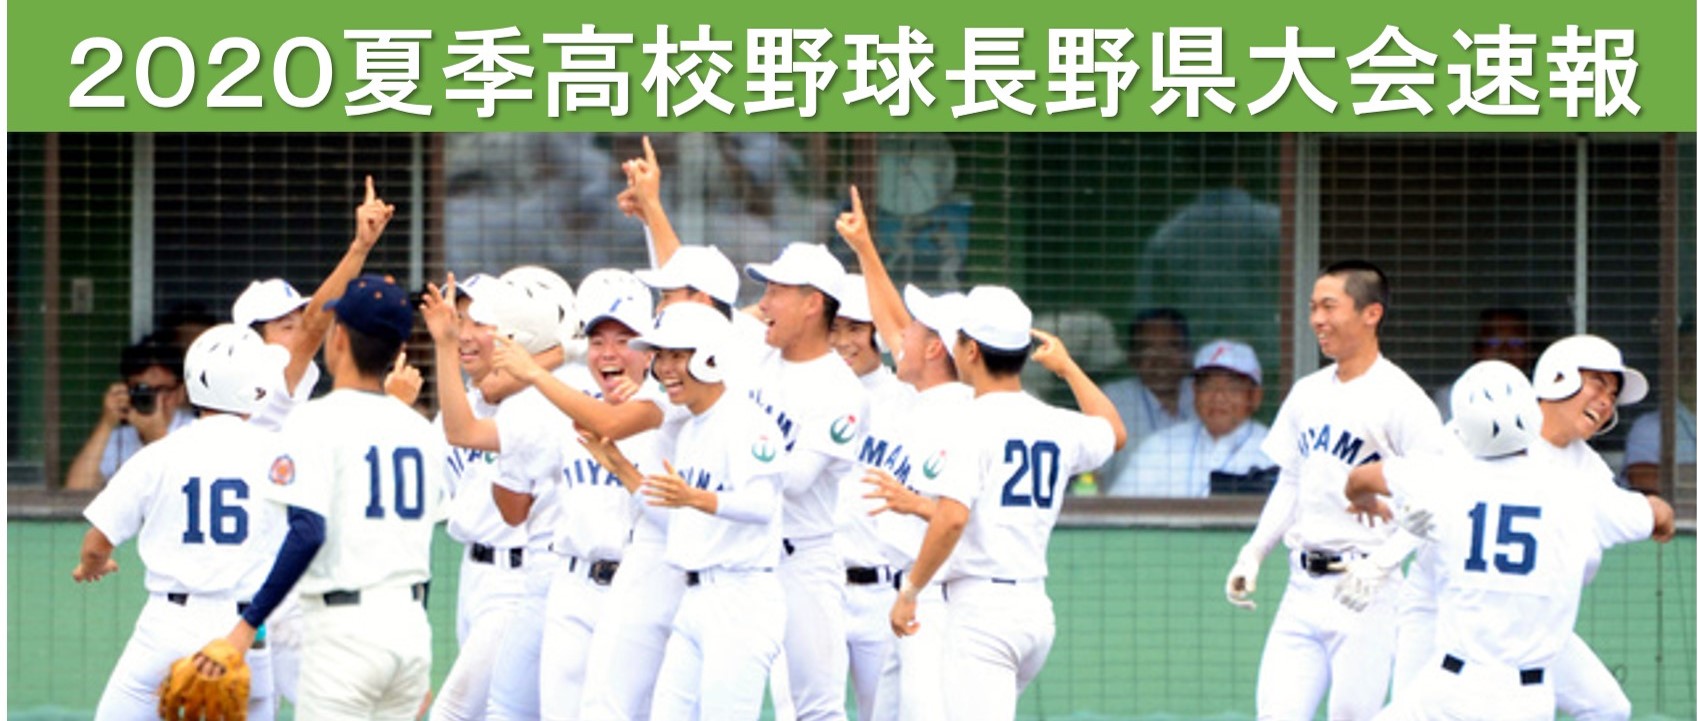 長野 県 高校 野球 結果